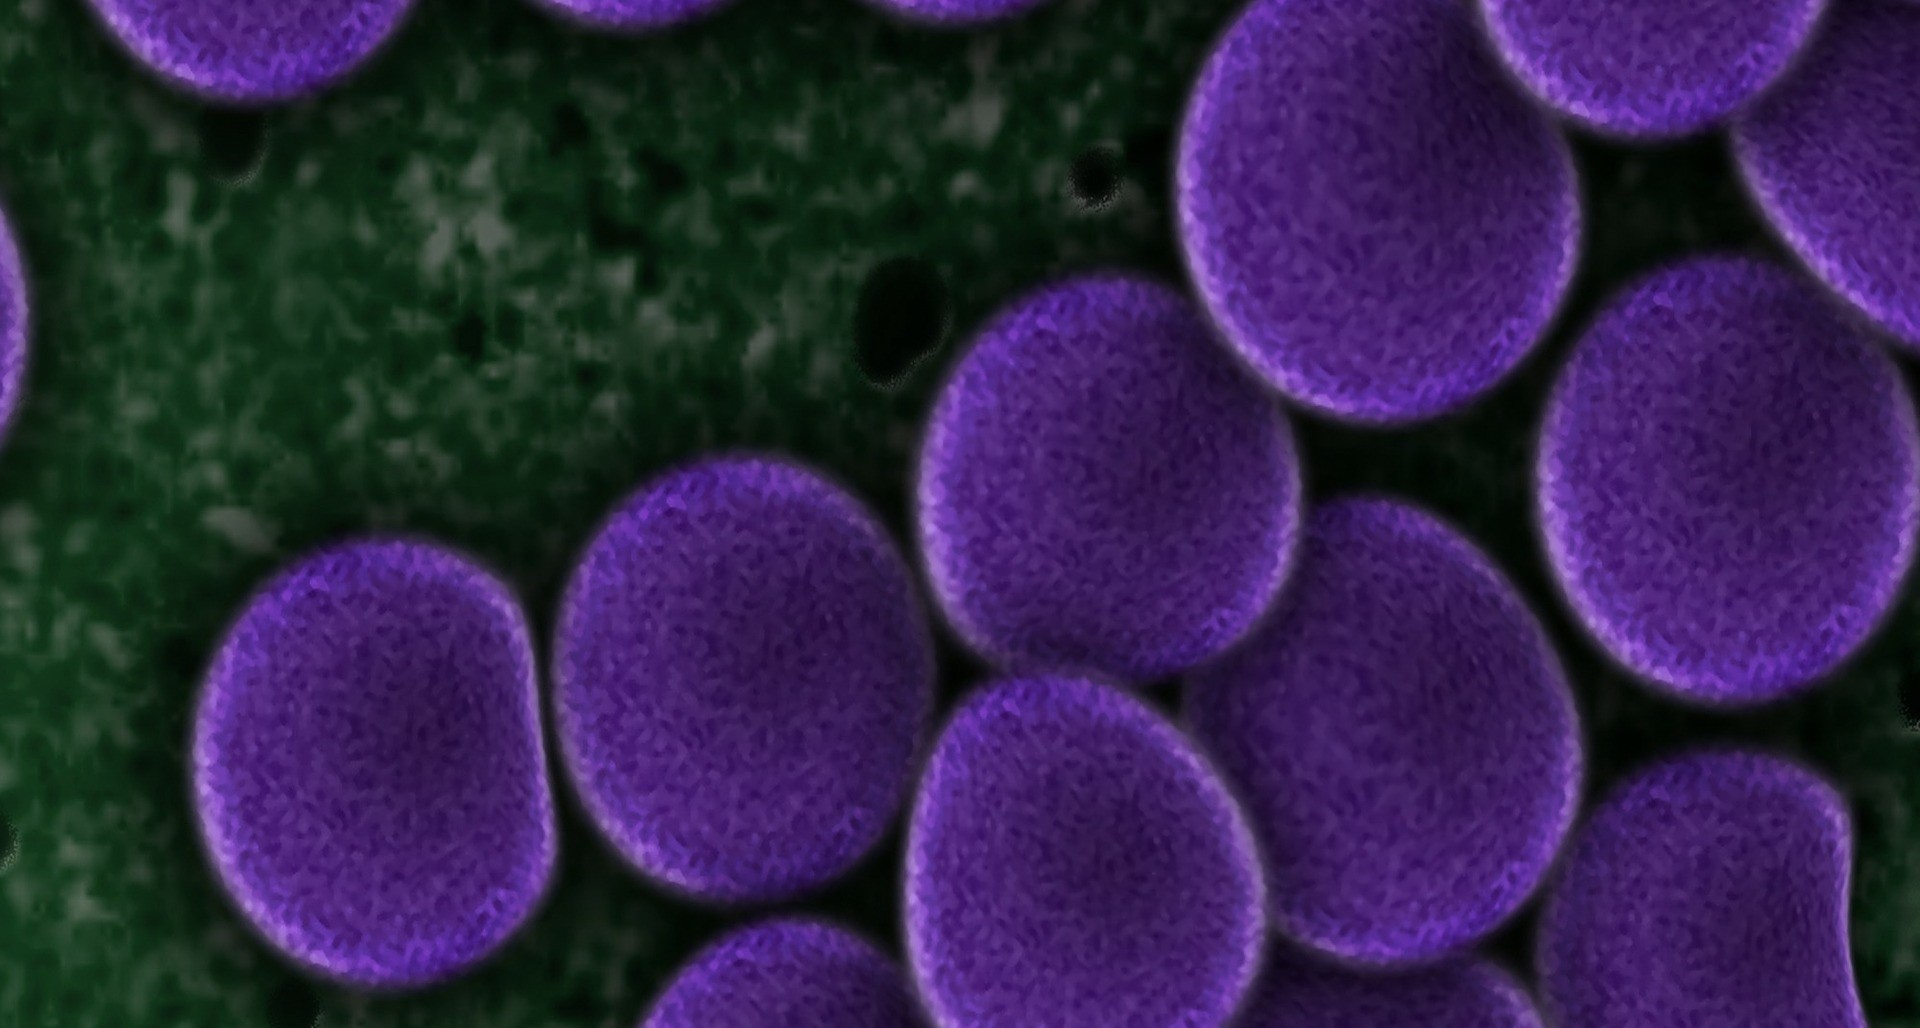 Widok bakterii meningokoków pod mikroskopem. Liczne fioletowe kuliste kształty.